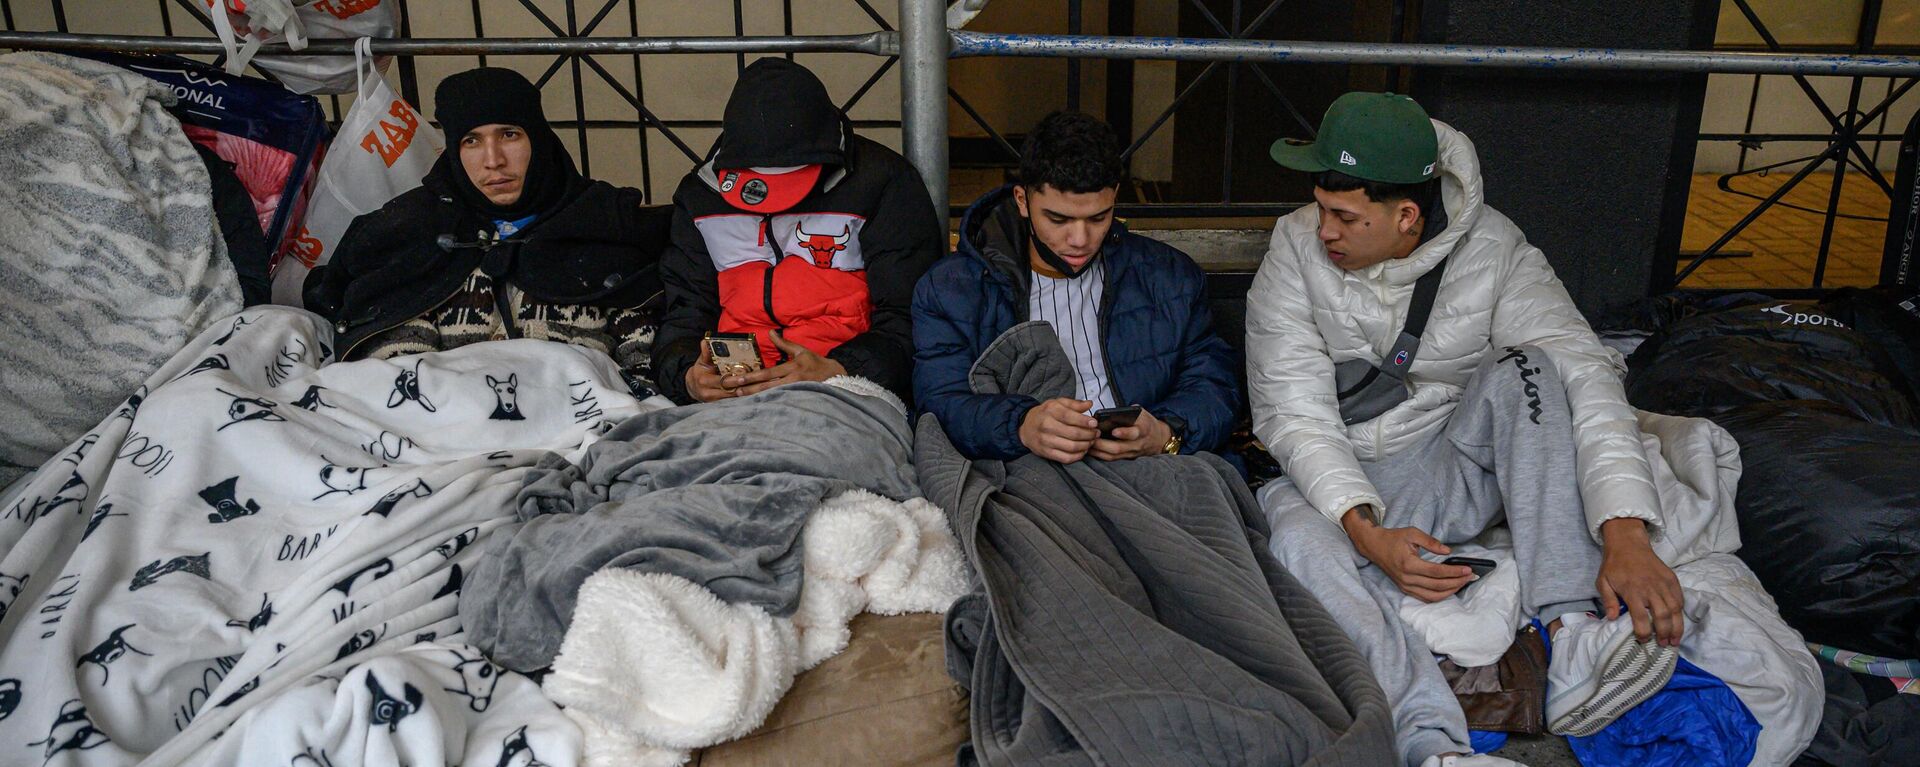 Migrantes acampan frente a un hotel donde habían sido alojados anteriormente, mientras se resisten a los esfuerzos de la ciudad para reubicarlos en un centro de Brooklyn para solicitantes de asilo, en el barrio de Hells Kitchen de Nueva York, el 31 de enero de 2023 - Sputnik Mundo, 1920, 13.02.2023